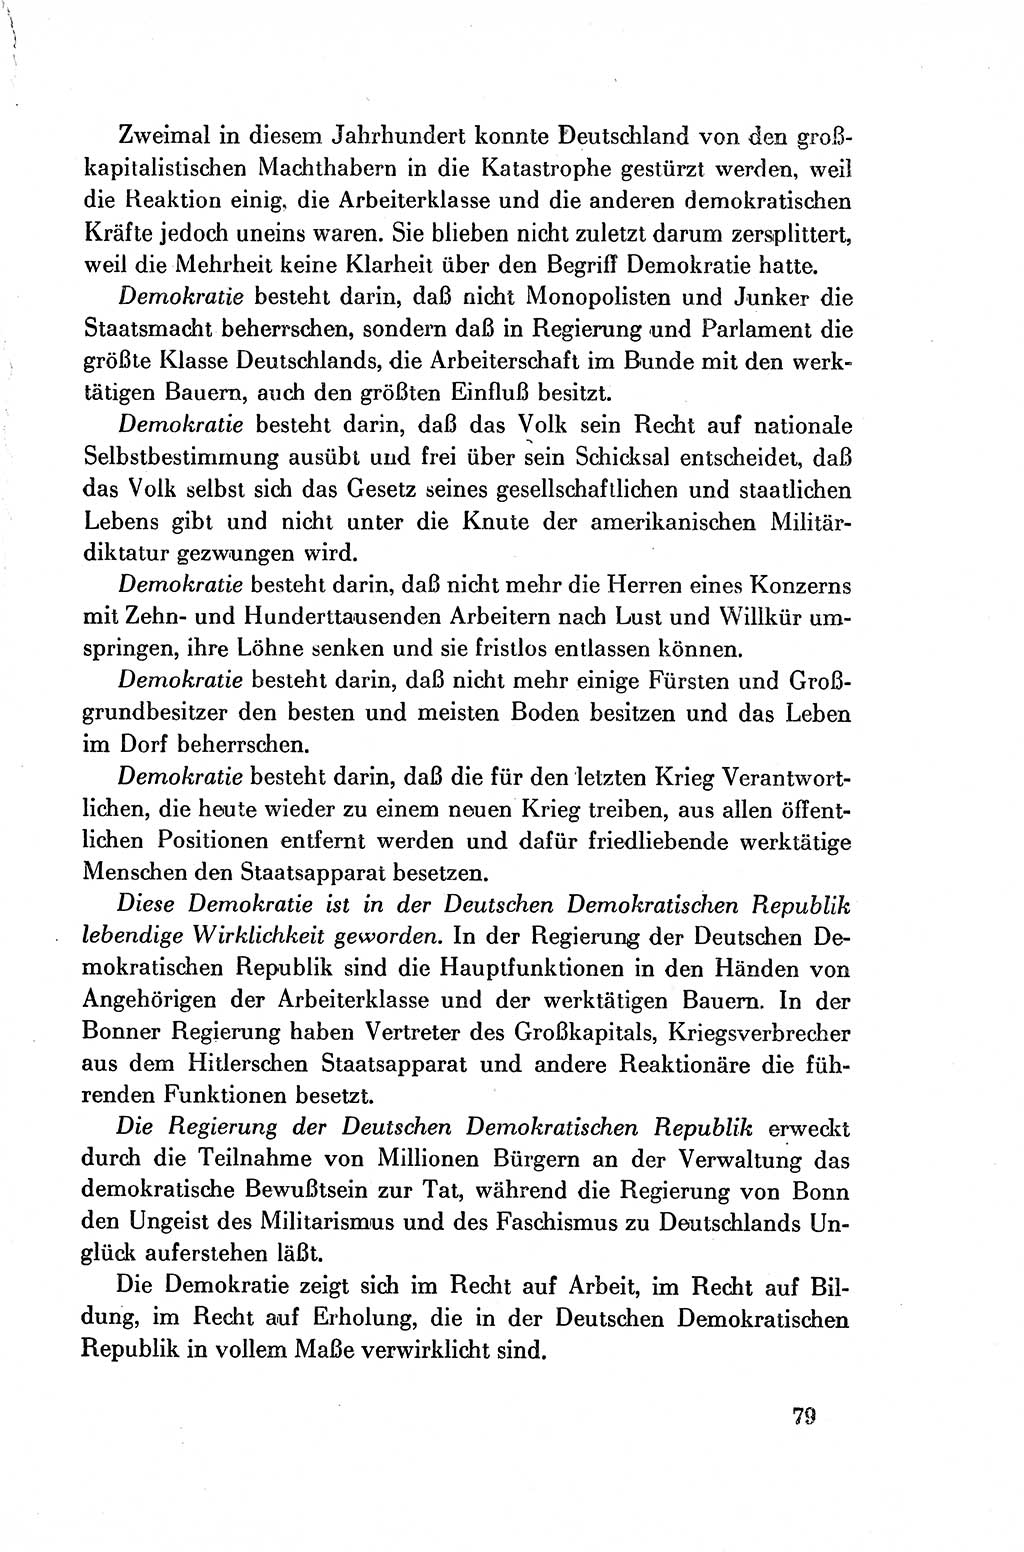 Dokumente der Sozialistischen Einheitspartei Deutschlands (SED) [Deutsche Demokratische Republik (DDR)] 1954-1955, Seite 79 (Dok. SED DDR 1954-1955, S. 79)